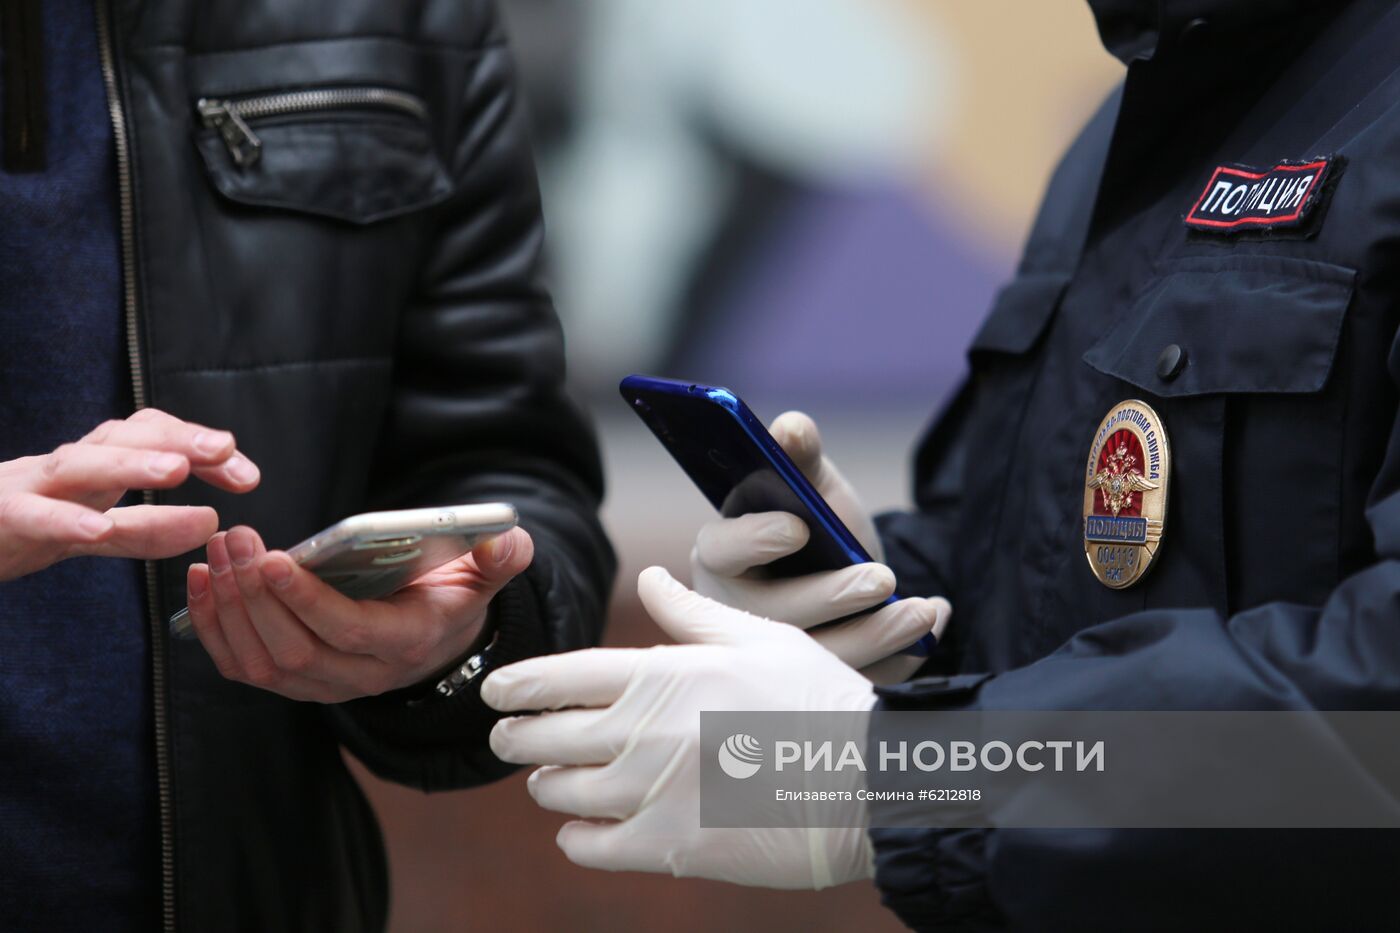 Нижегородская область первой из российских регионов ввела QR-коды для выхода из дома